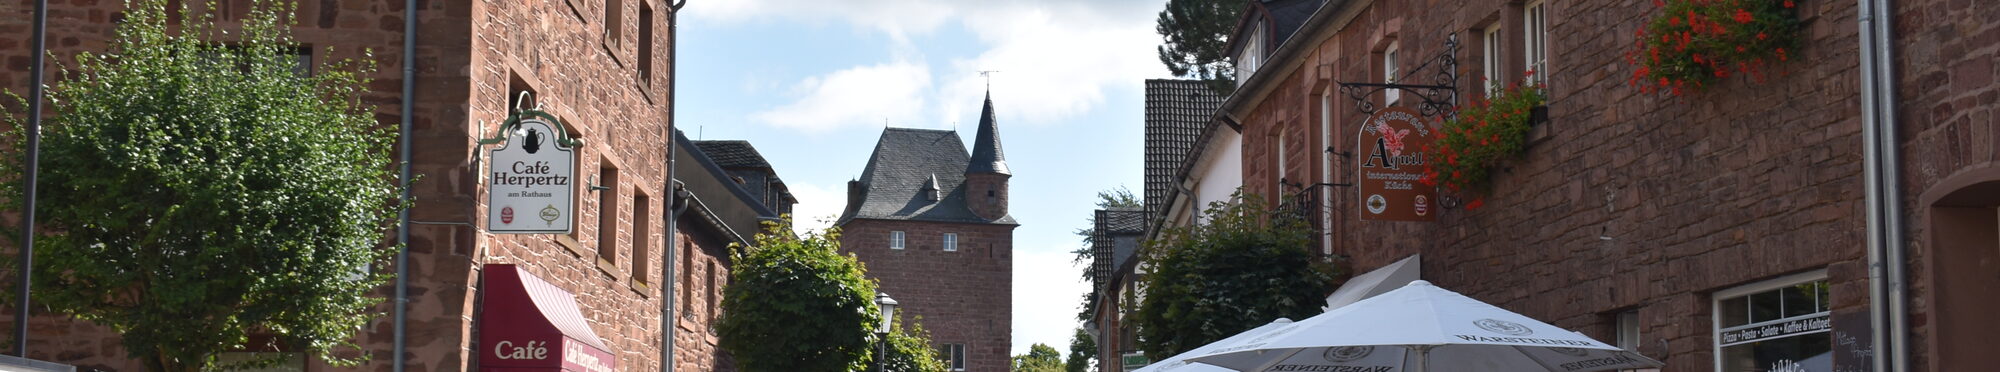 Im Kreis Düren gibt es zahlreiche attraktive Ausflugsziele wie die Nideggener Altstadt.